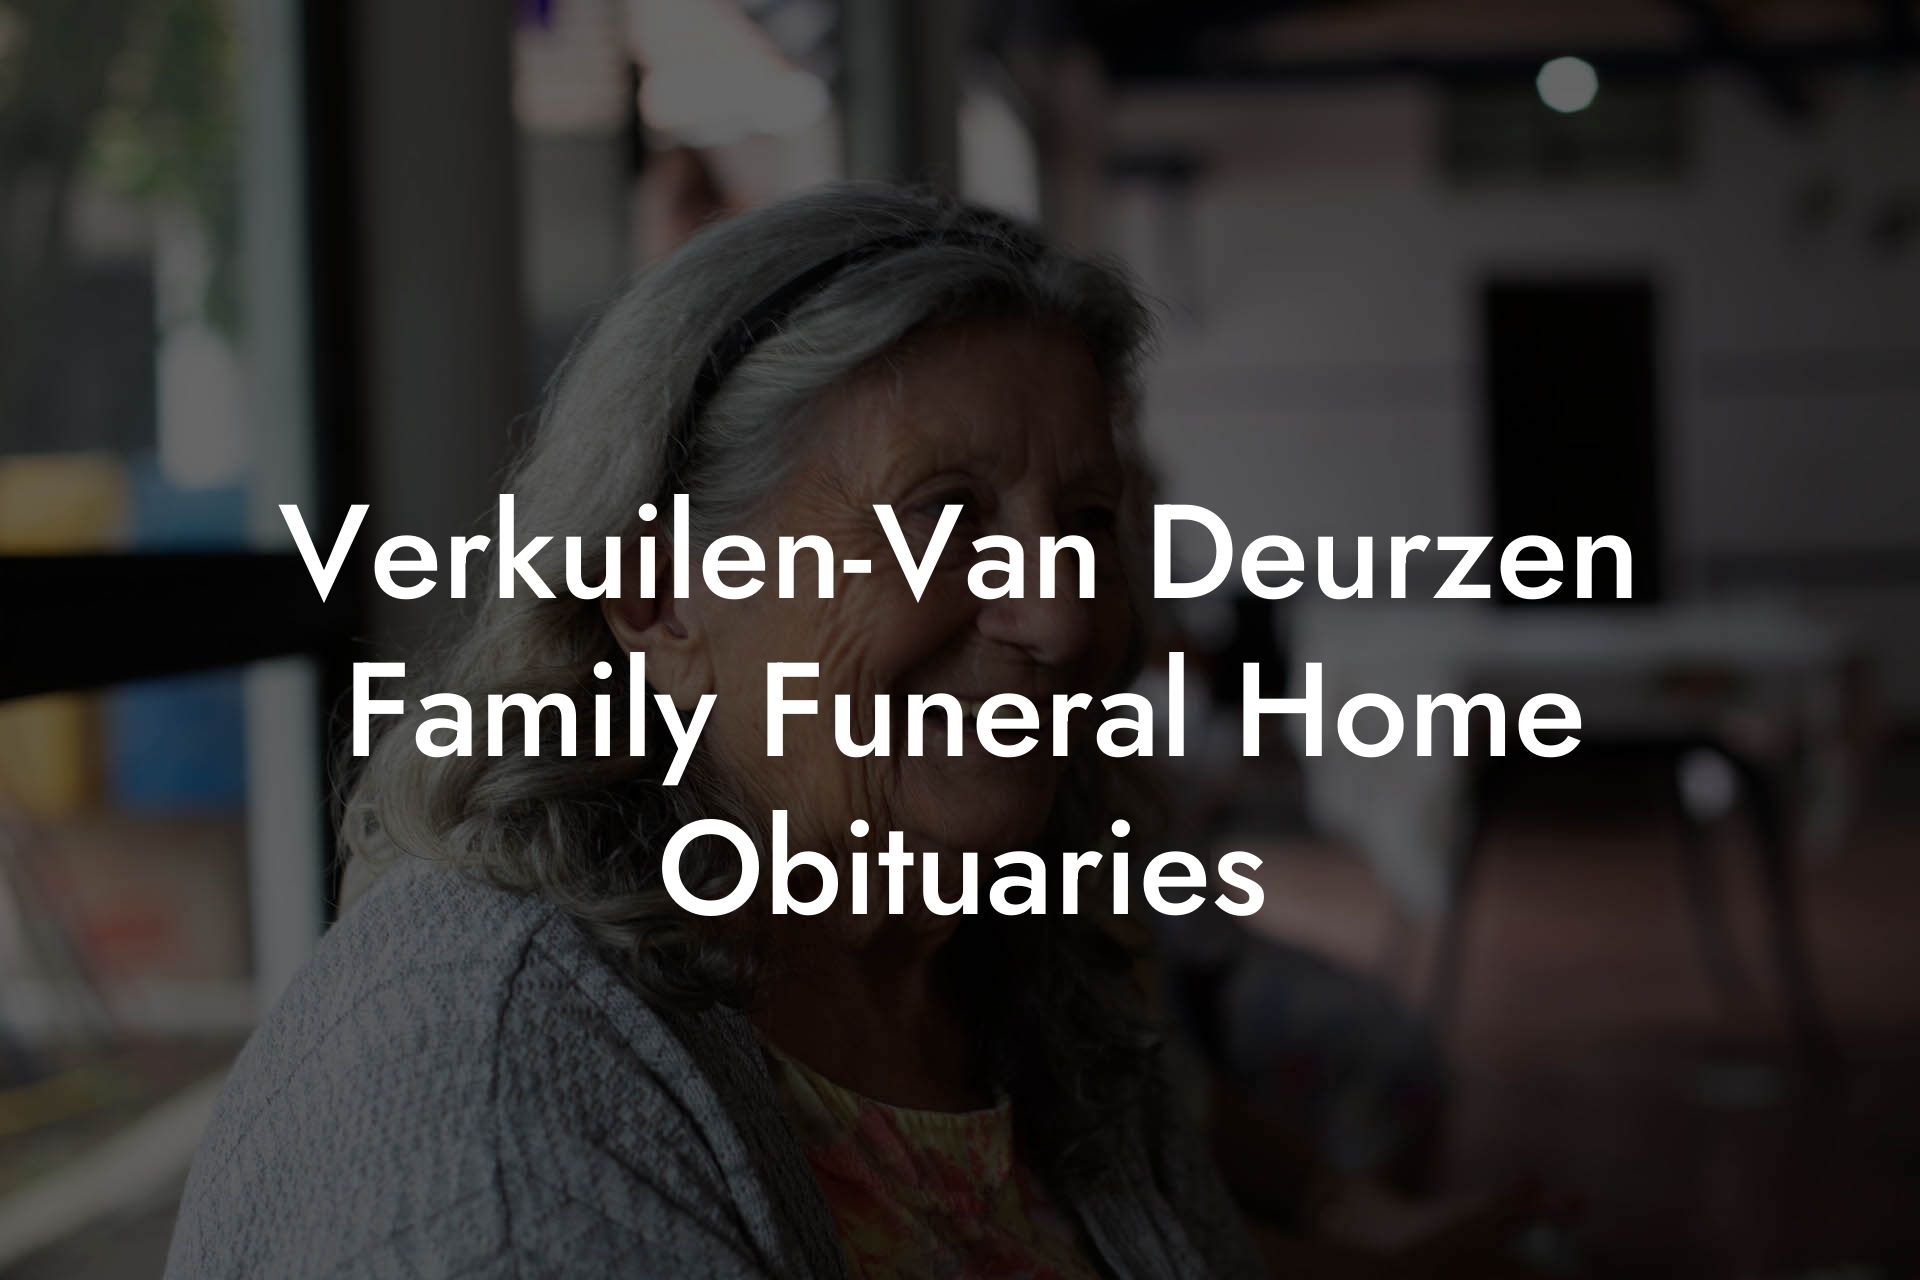 Verkuilen-Van Deurzen Family Funeral Home Obituaries